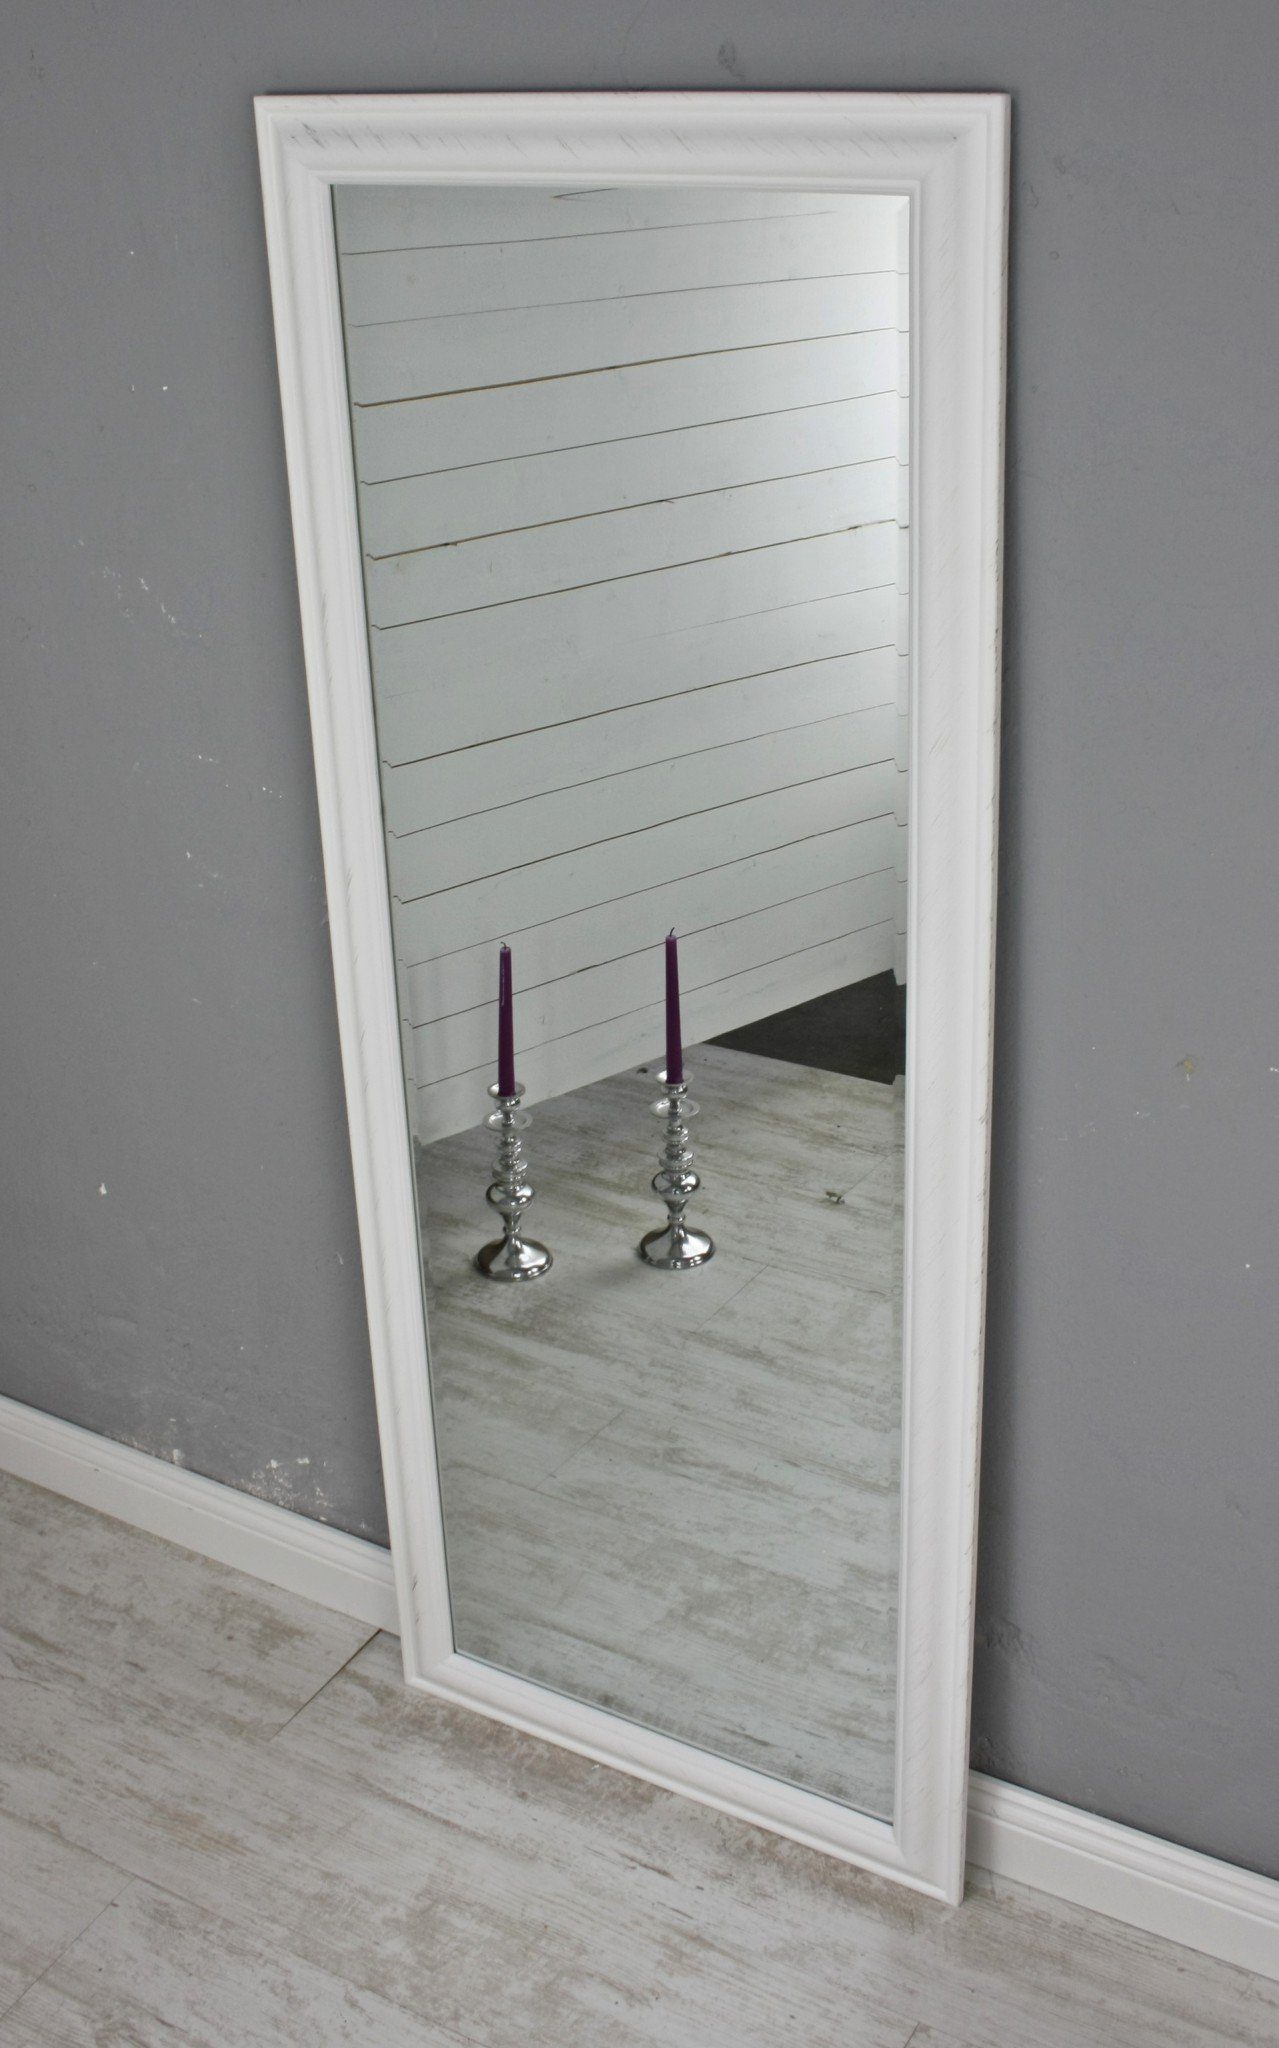 150cm, schlichtem Standspiegel Spiegel weiß weiß Wandspiegel 60cm schlicht elbmöbel in mit groß 50 x Rahmen Wandspiegel